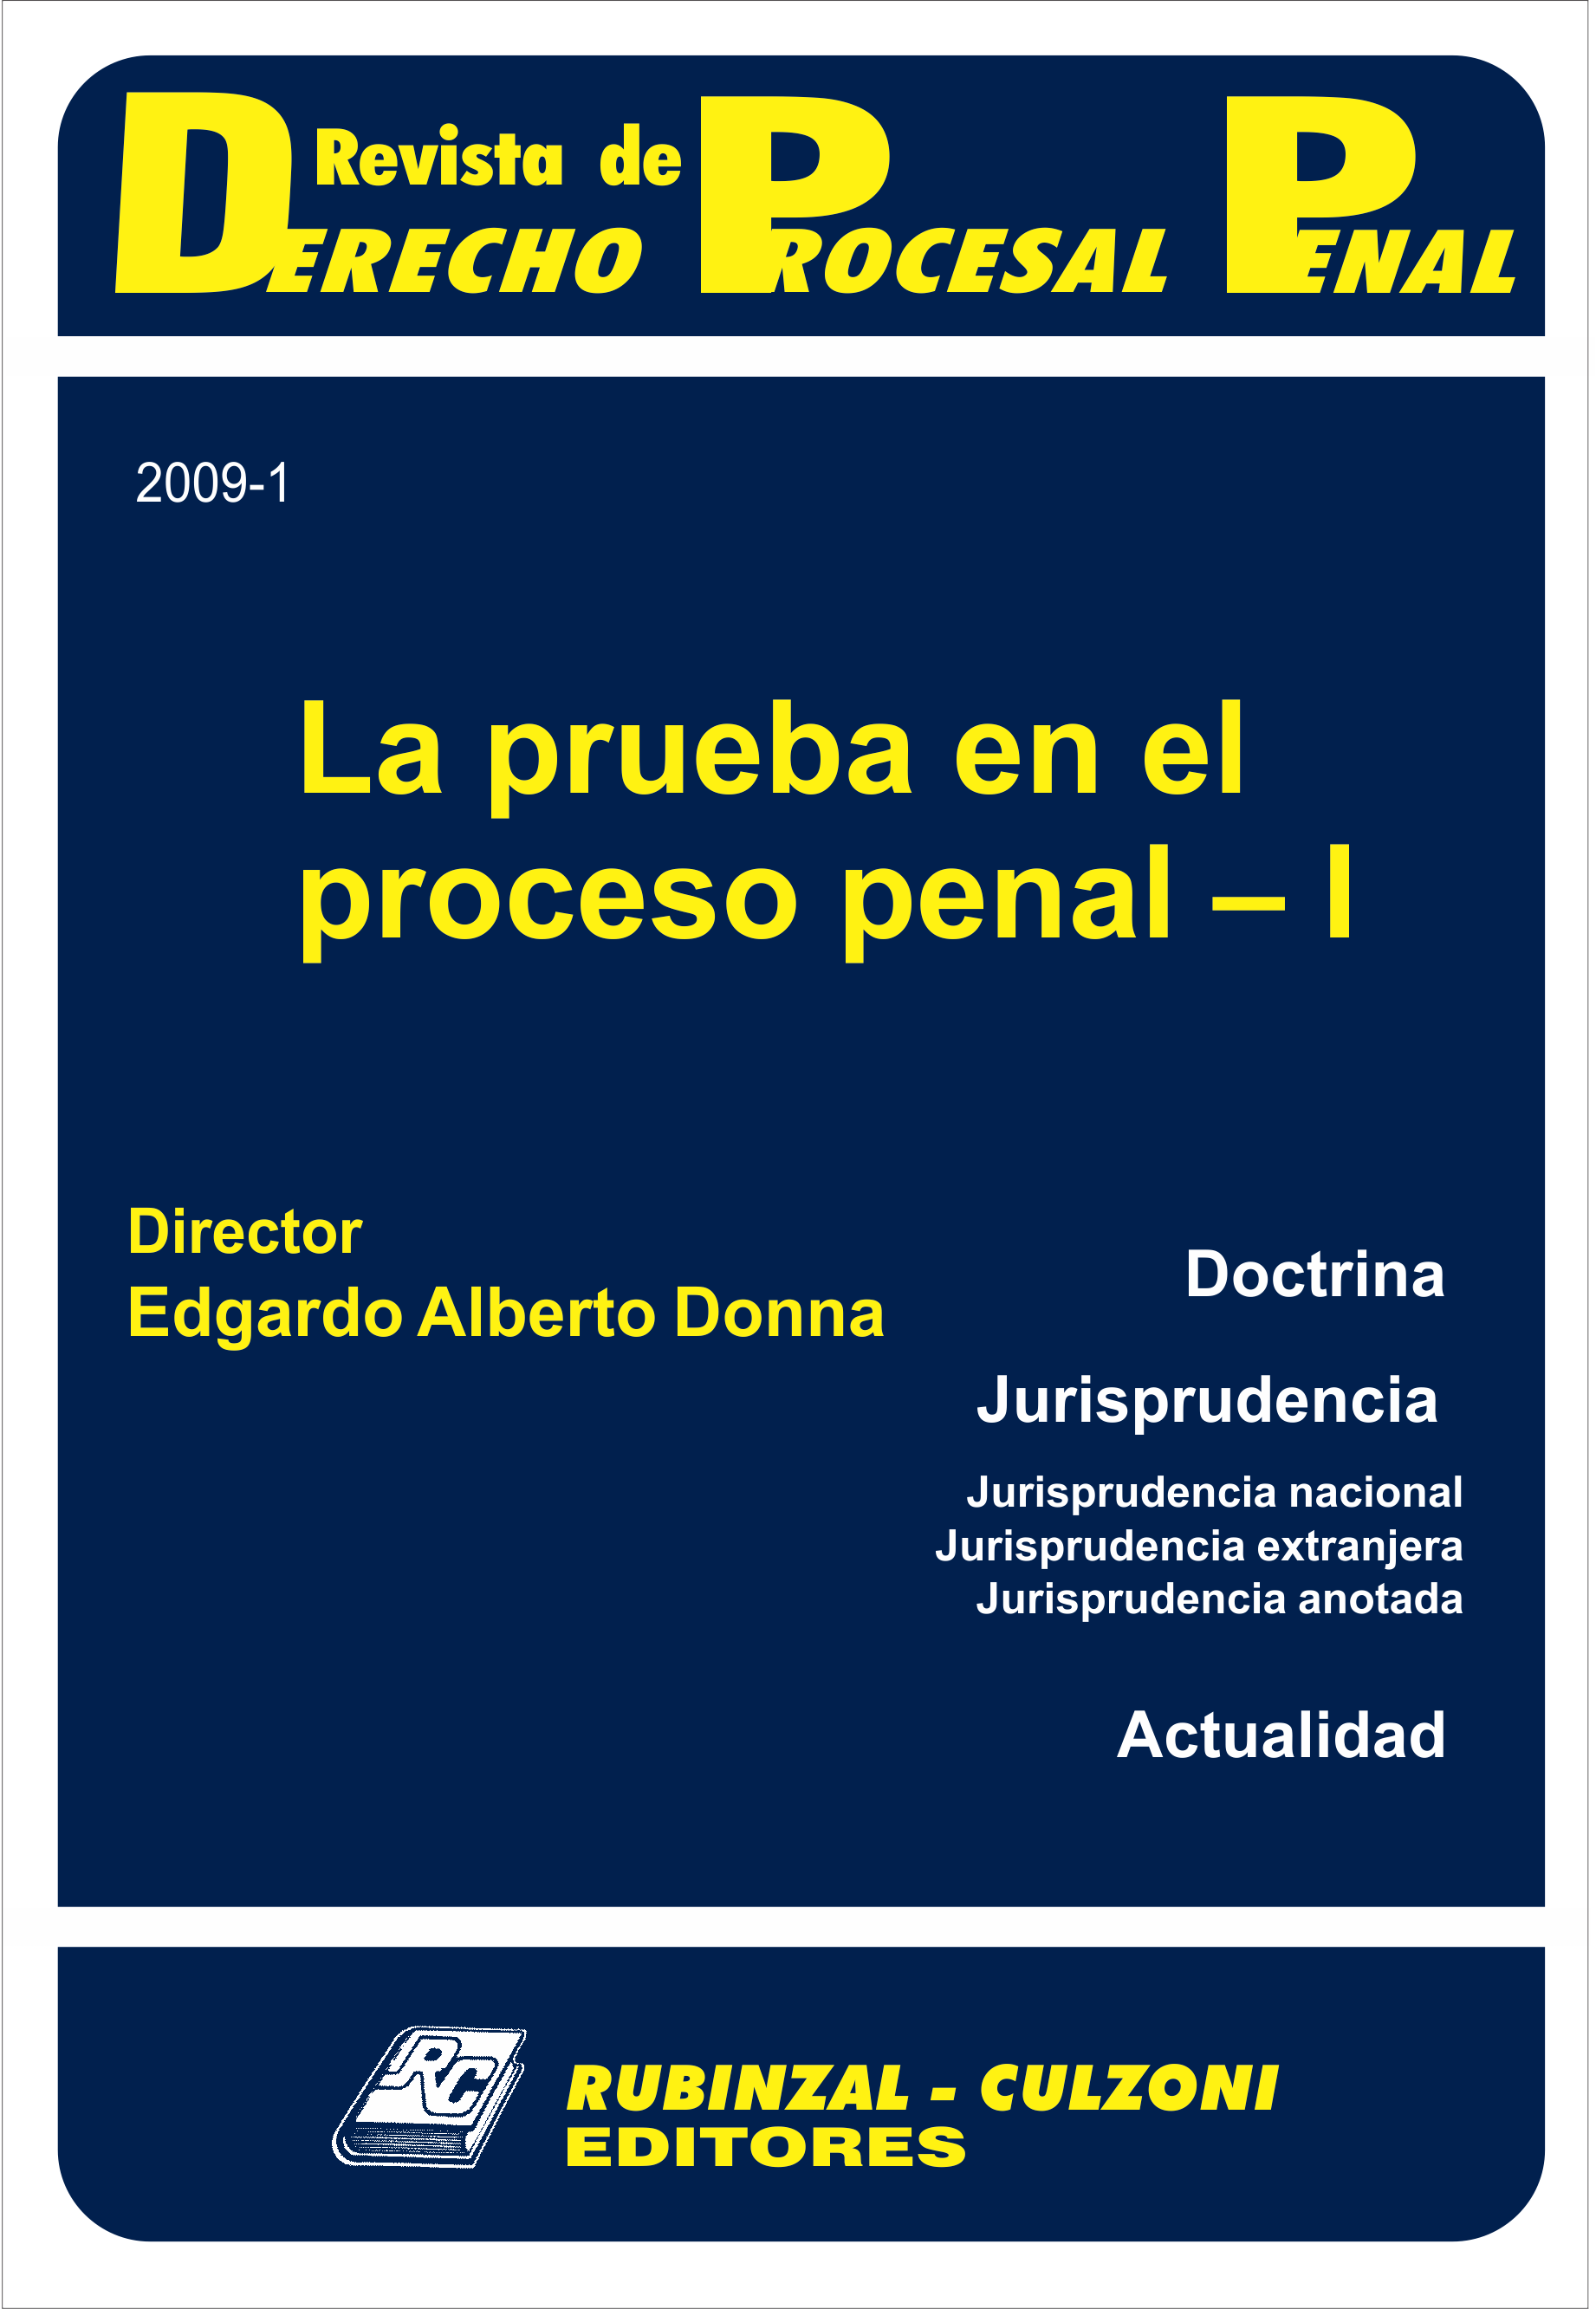 Revista de Derecho Procesal Penal - La prueba en el proceso penal - I.